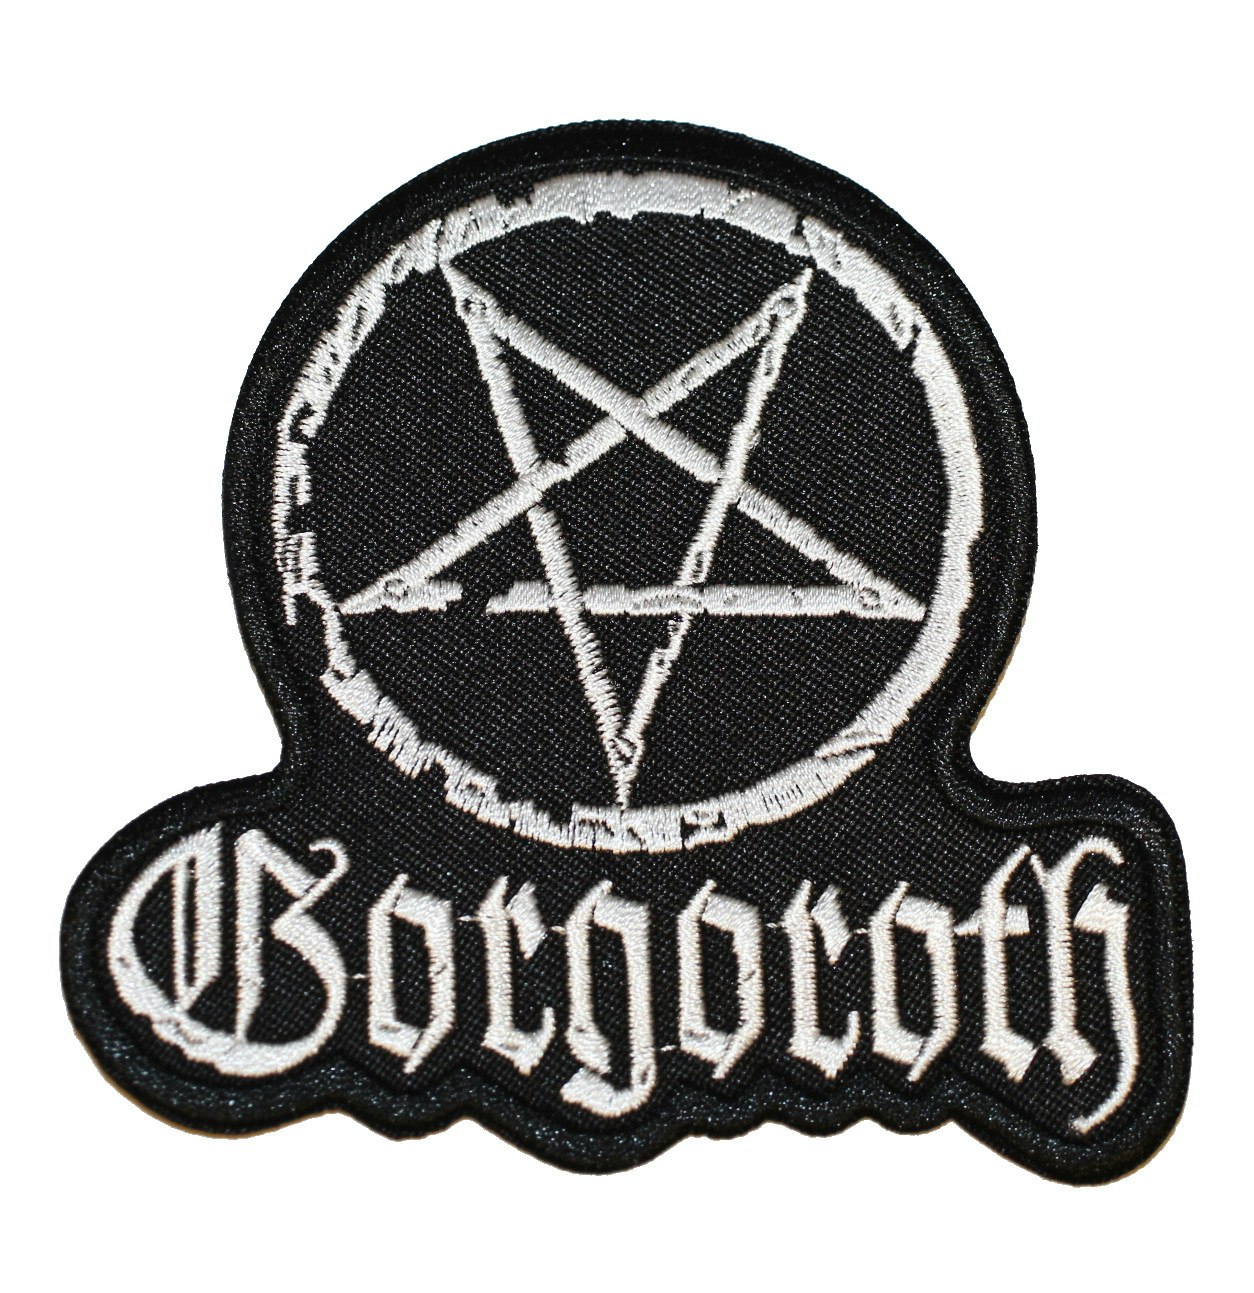 Gorgoroth pentagram logo patch